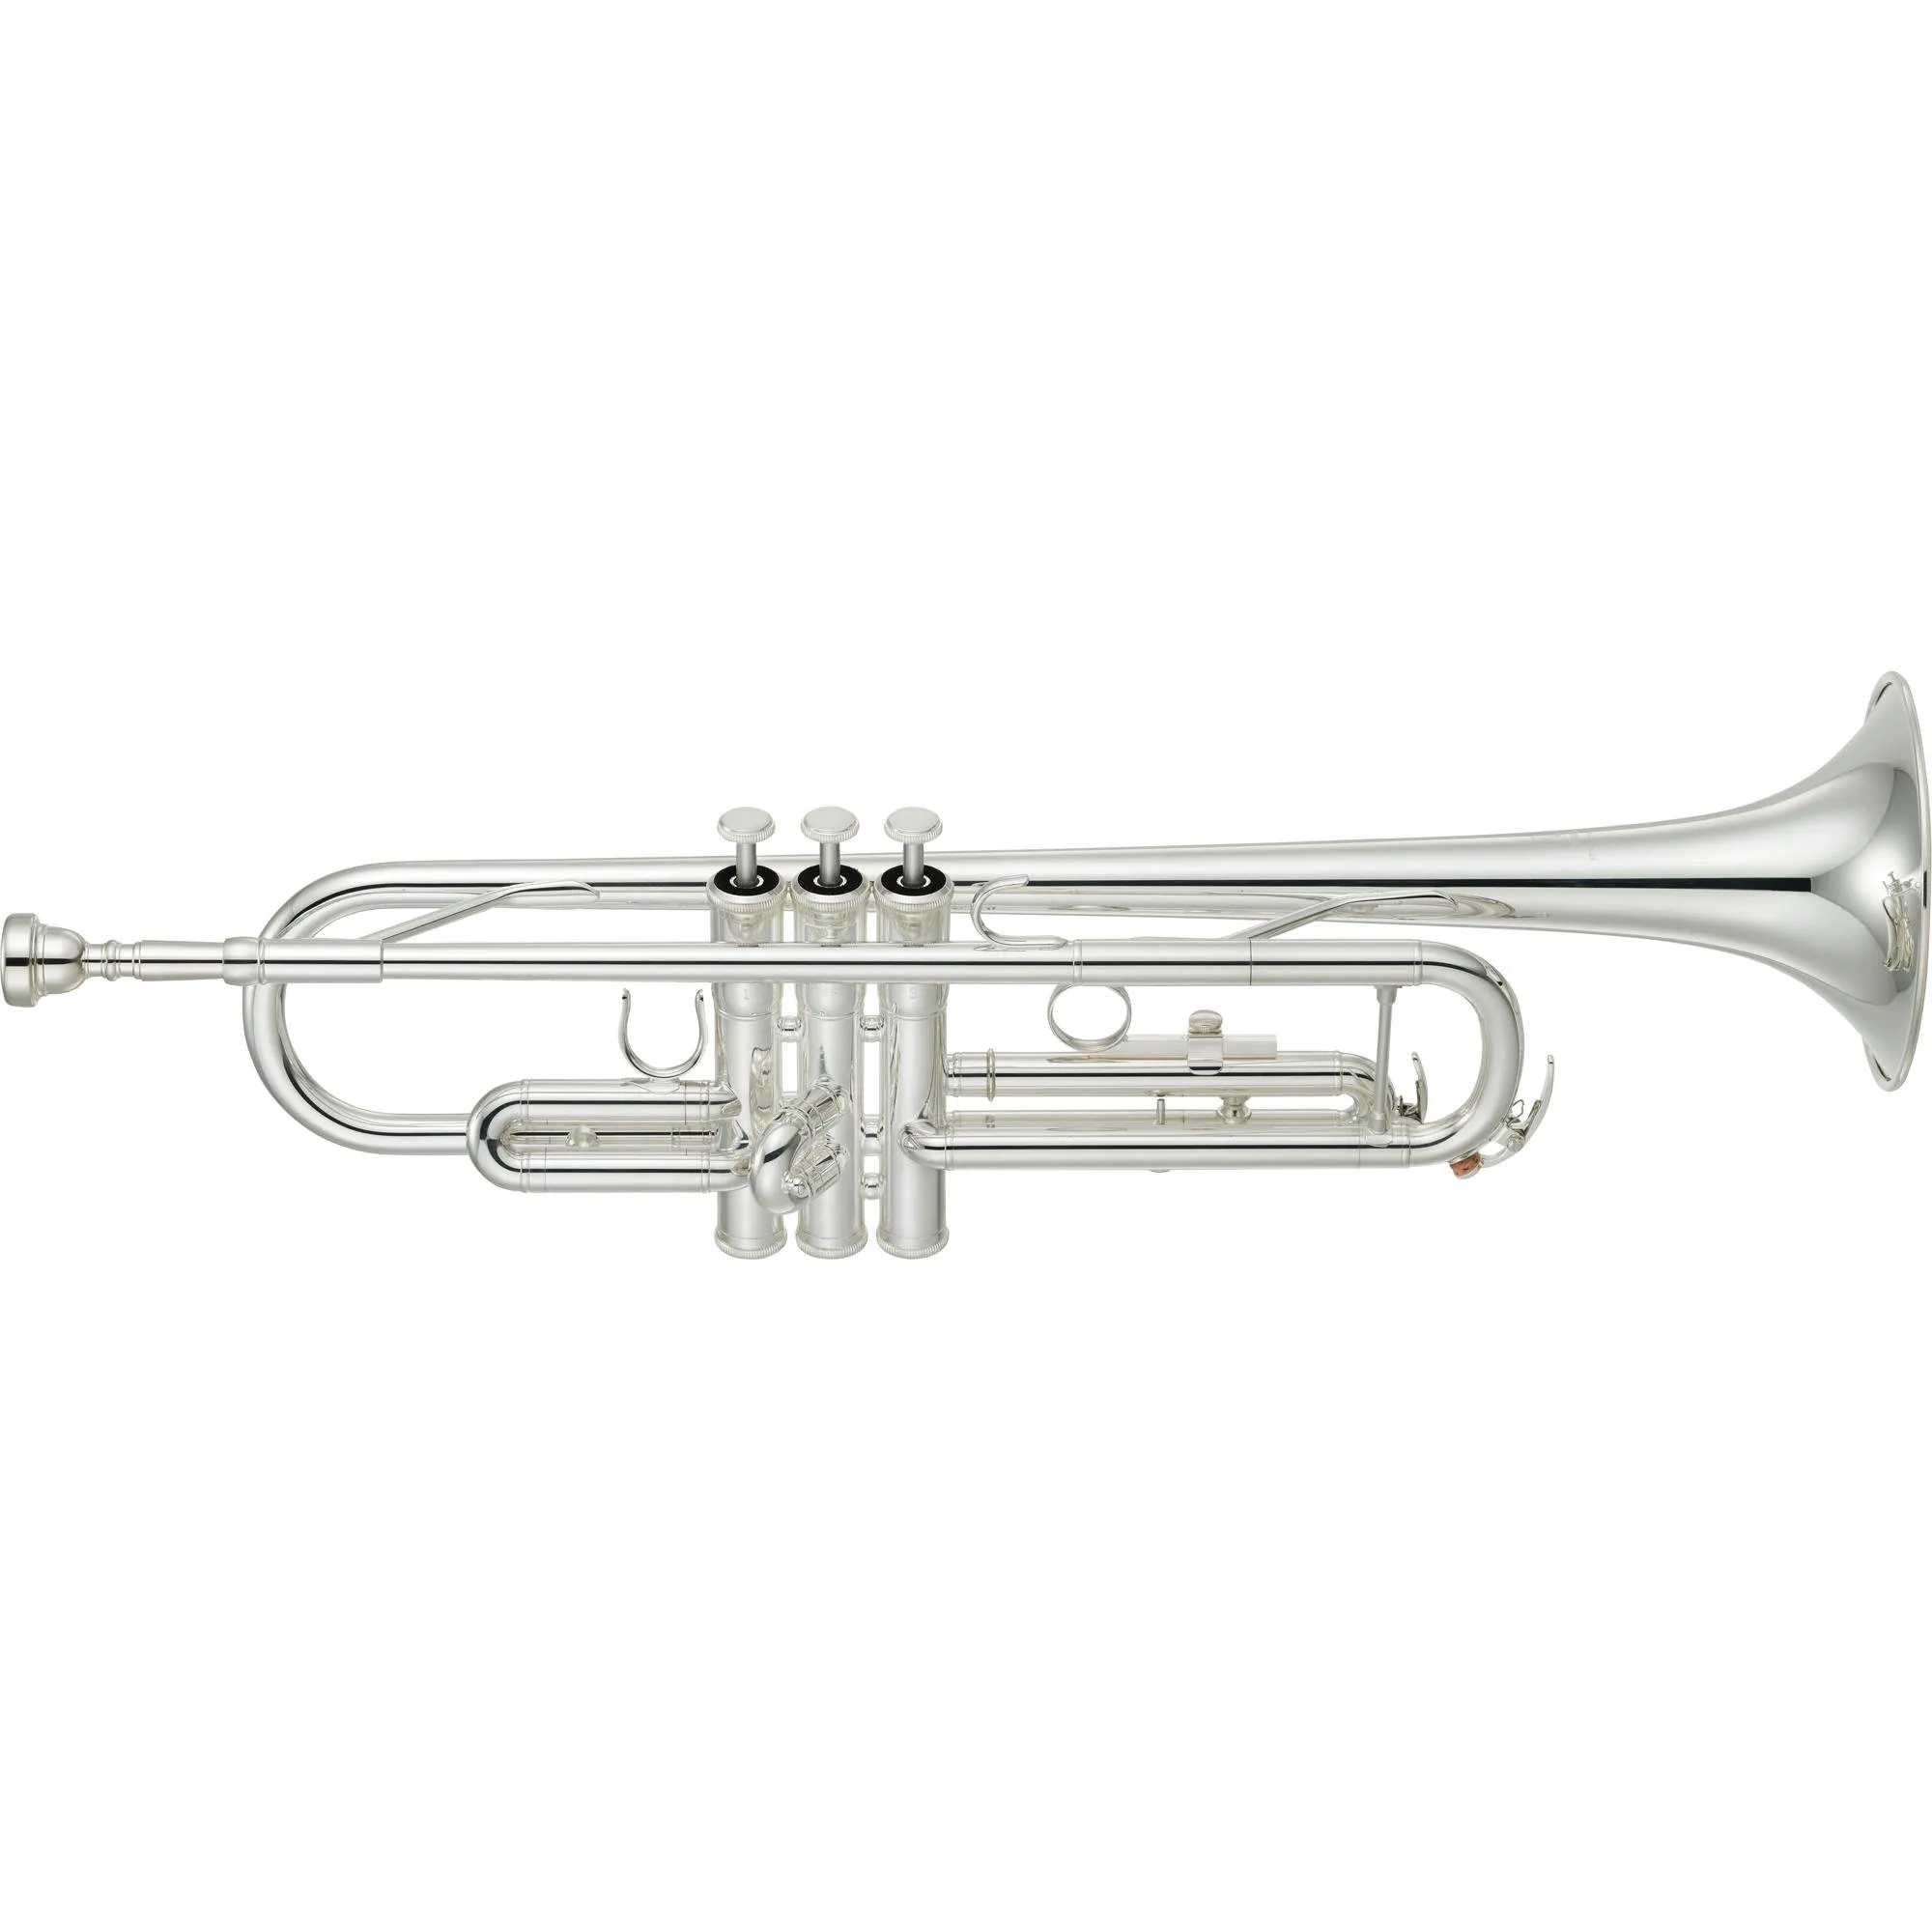 Trompete Yamaha YTR-3335S BB Prateado por 6.880,99 à vista no boleto/pix ou parcele em até 12x sem juros. Compre na loja Mundomax!